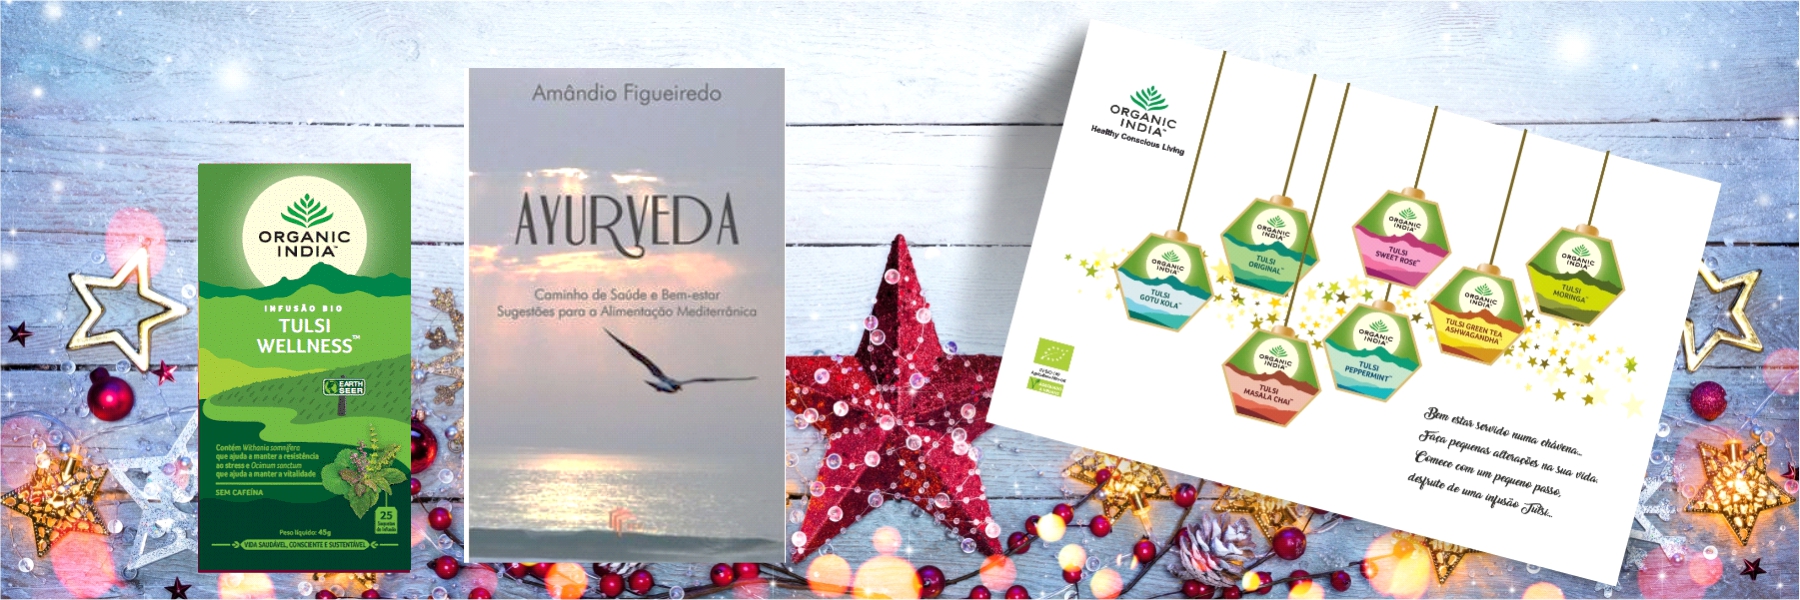 Pack Natal Infusão Bio Organic India e Livro Ayurveda